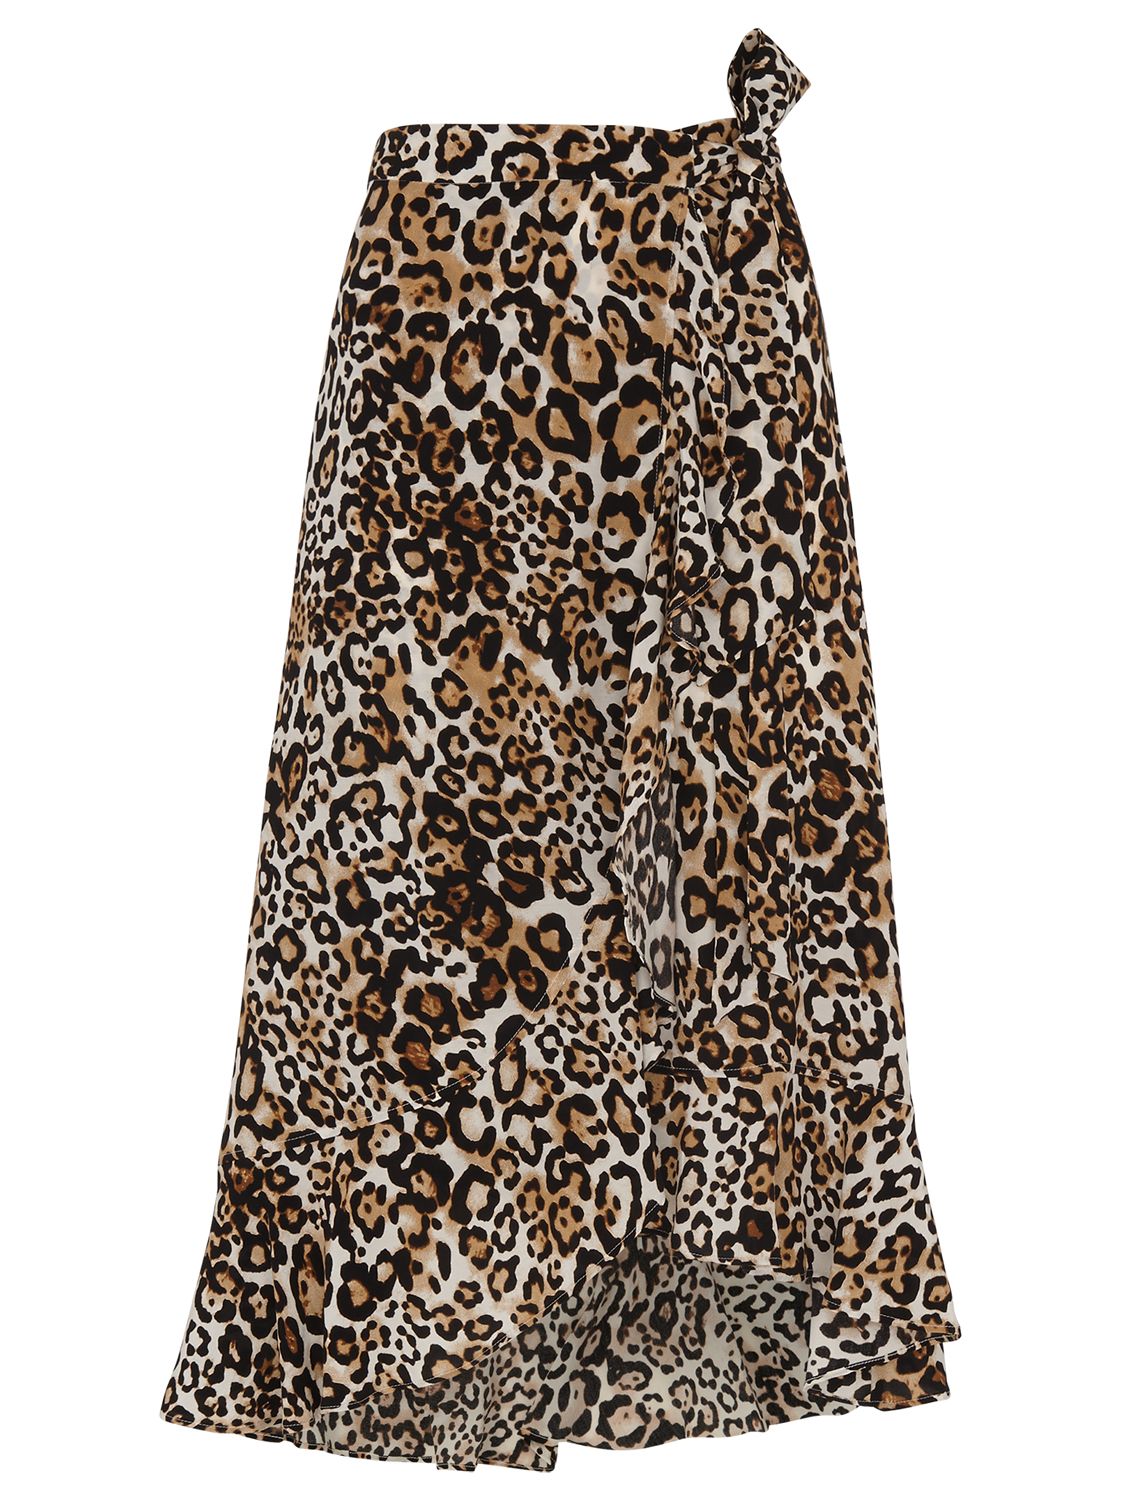 Whistles Animal Print Skirt, Leopard Print